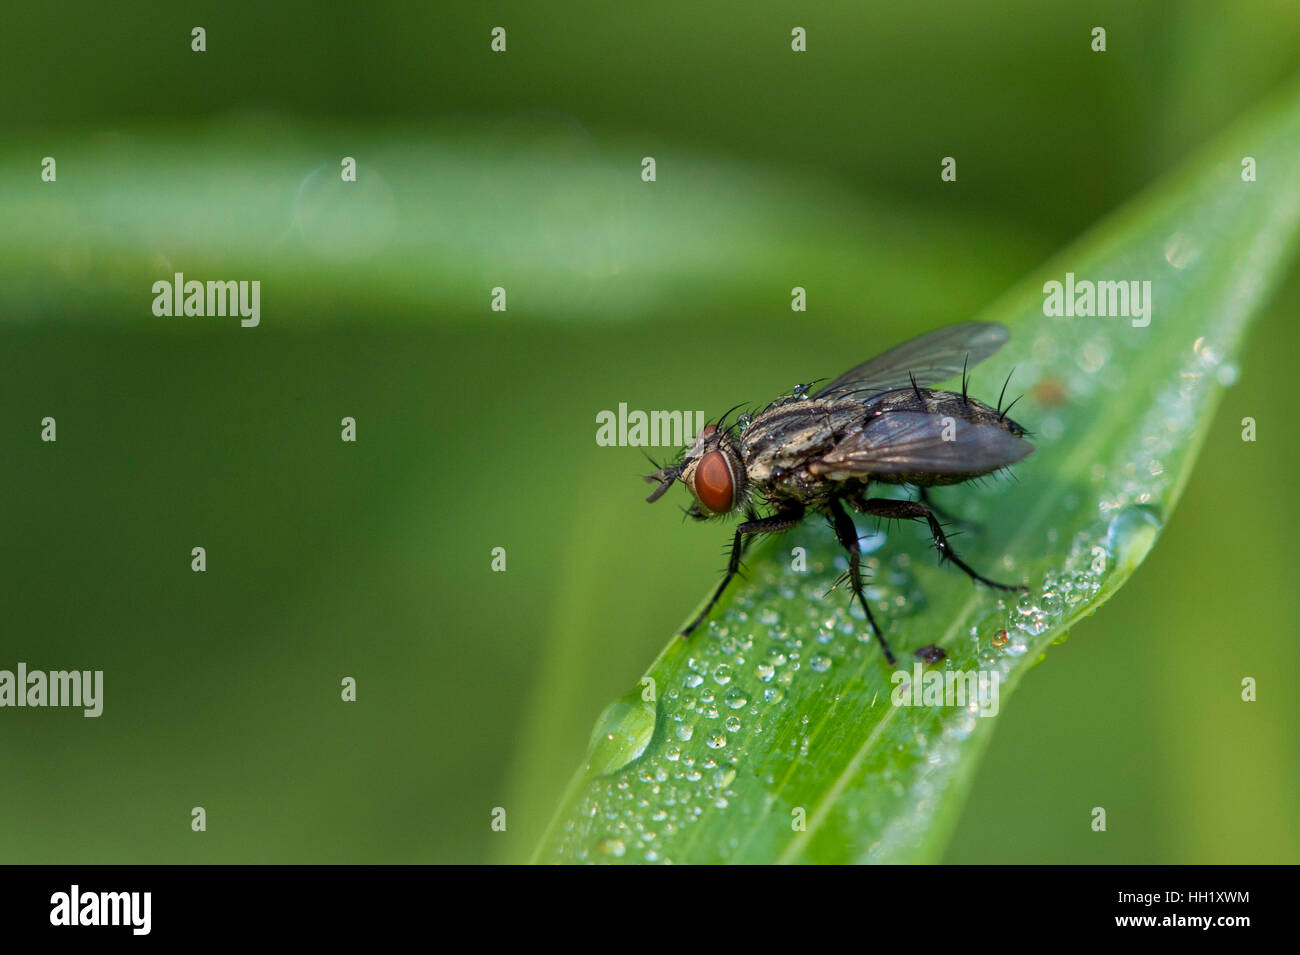 Eine kleine Fliege sitzt auf einem grünen Rasen mit Wasser Tropfen. Stockfoto